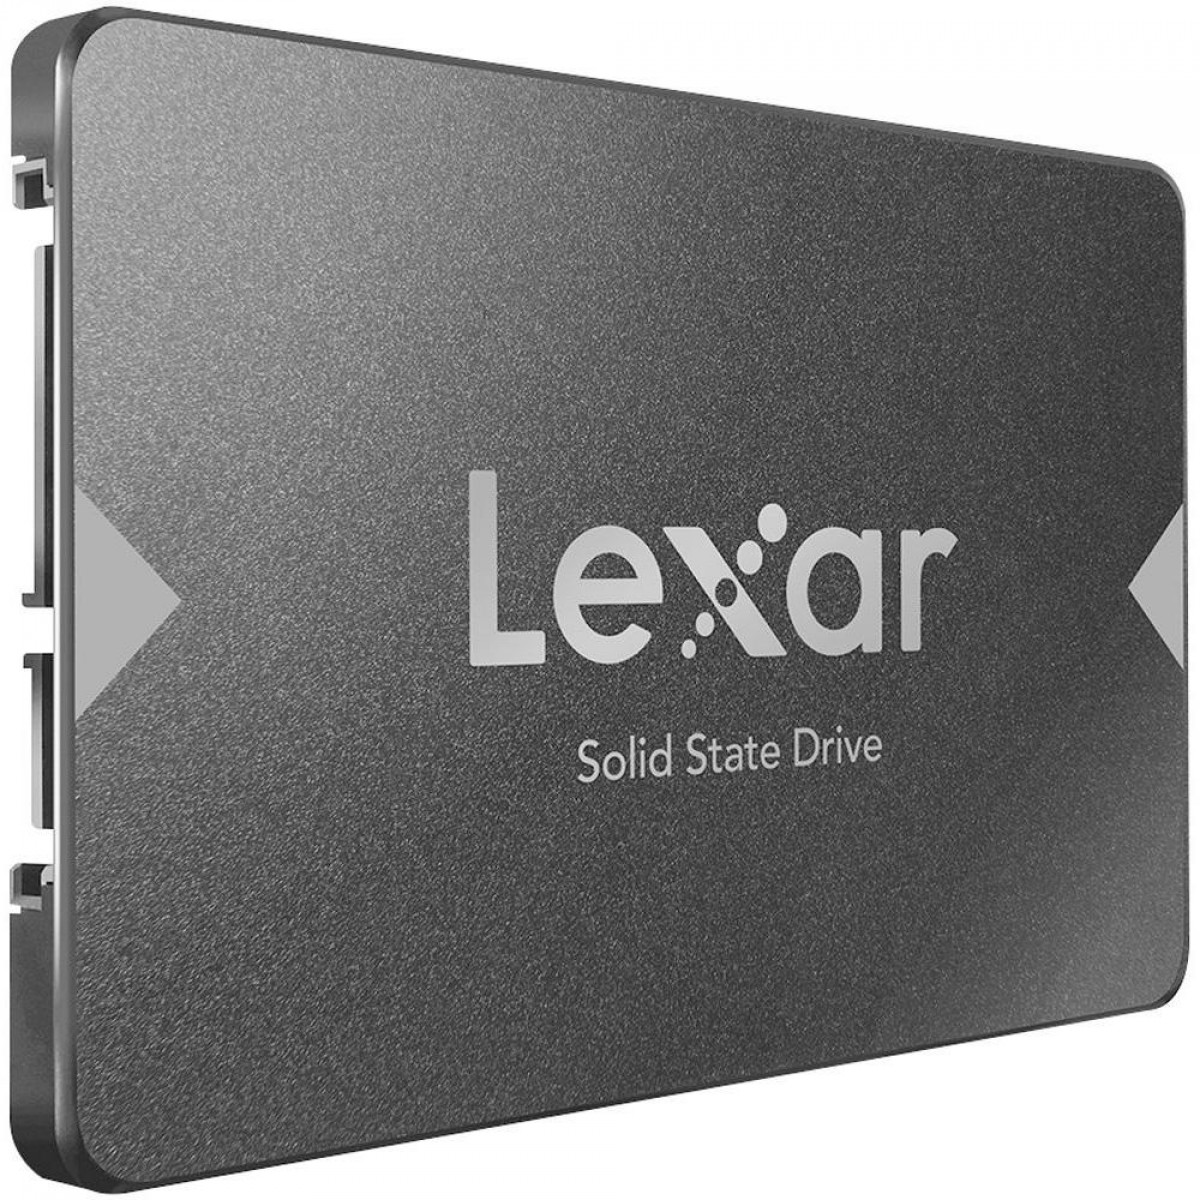 SSD Lexar NS100, 512GB, Sata III, Leitura 550MBs, LNS100-512RBNA